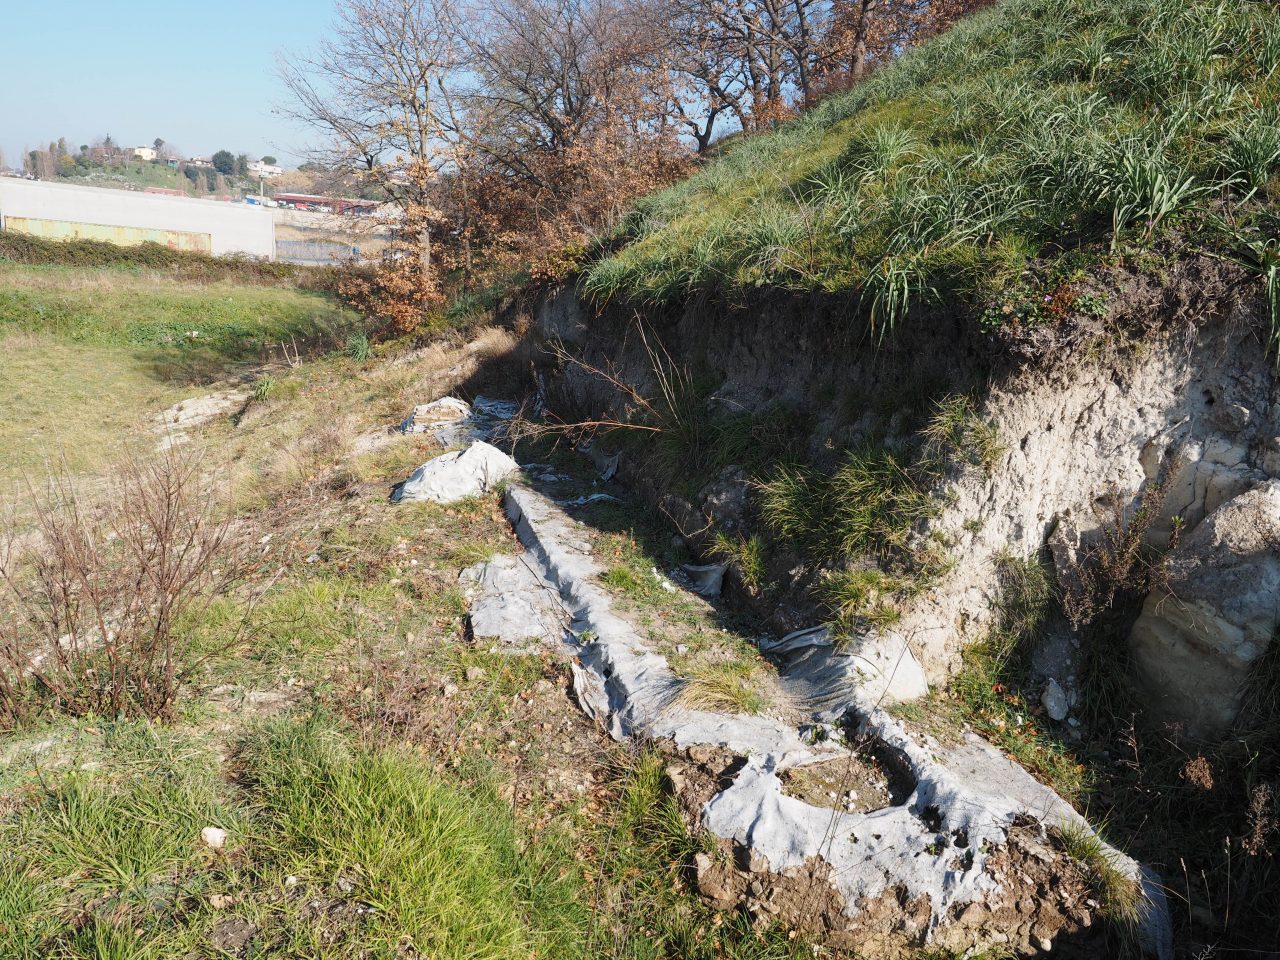 Malagrotta- Roma Municipio XI- Foto 16 febbraio 2017-Scavi Archeologici abbandonati a ridosso della discarica più grande d’Europa.